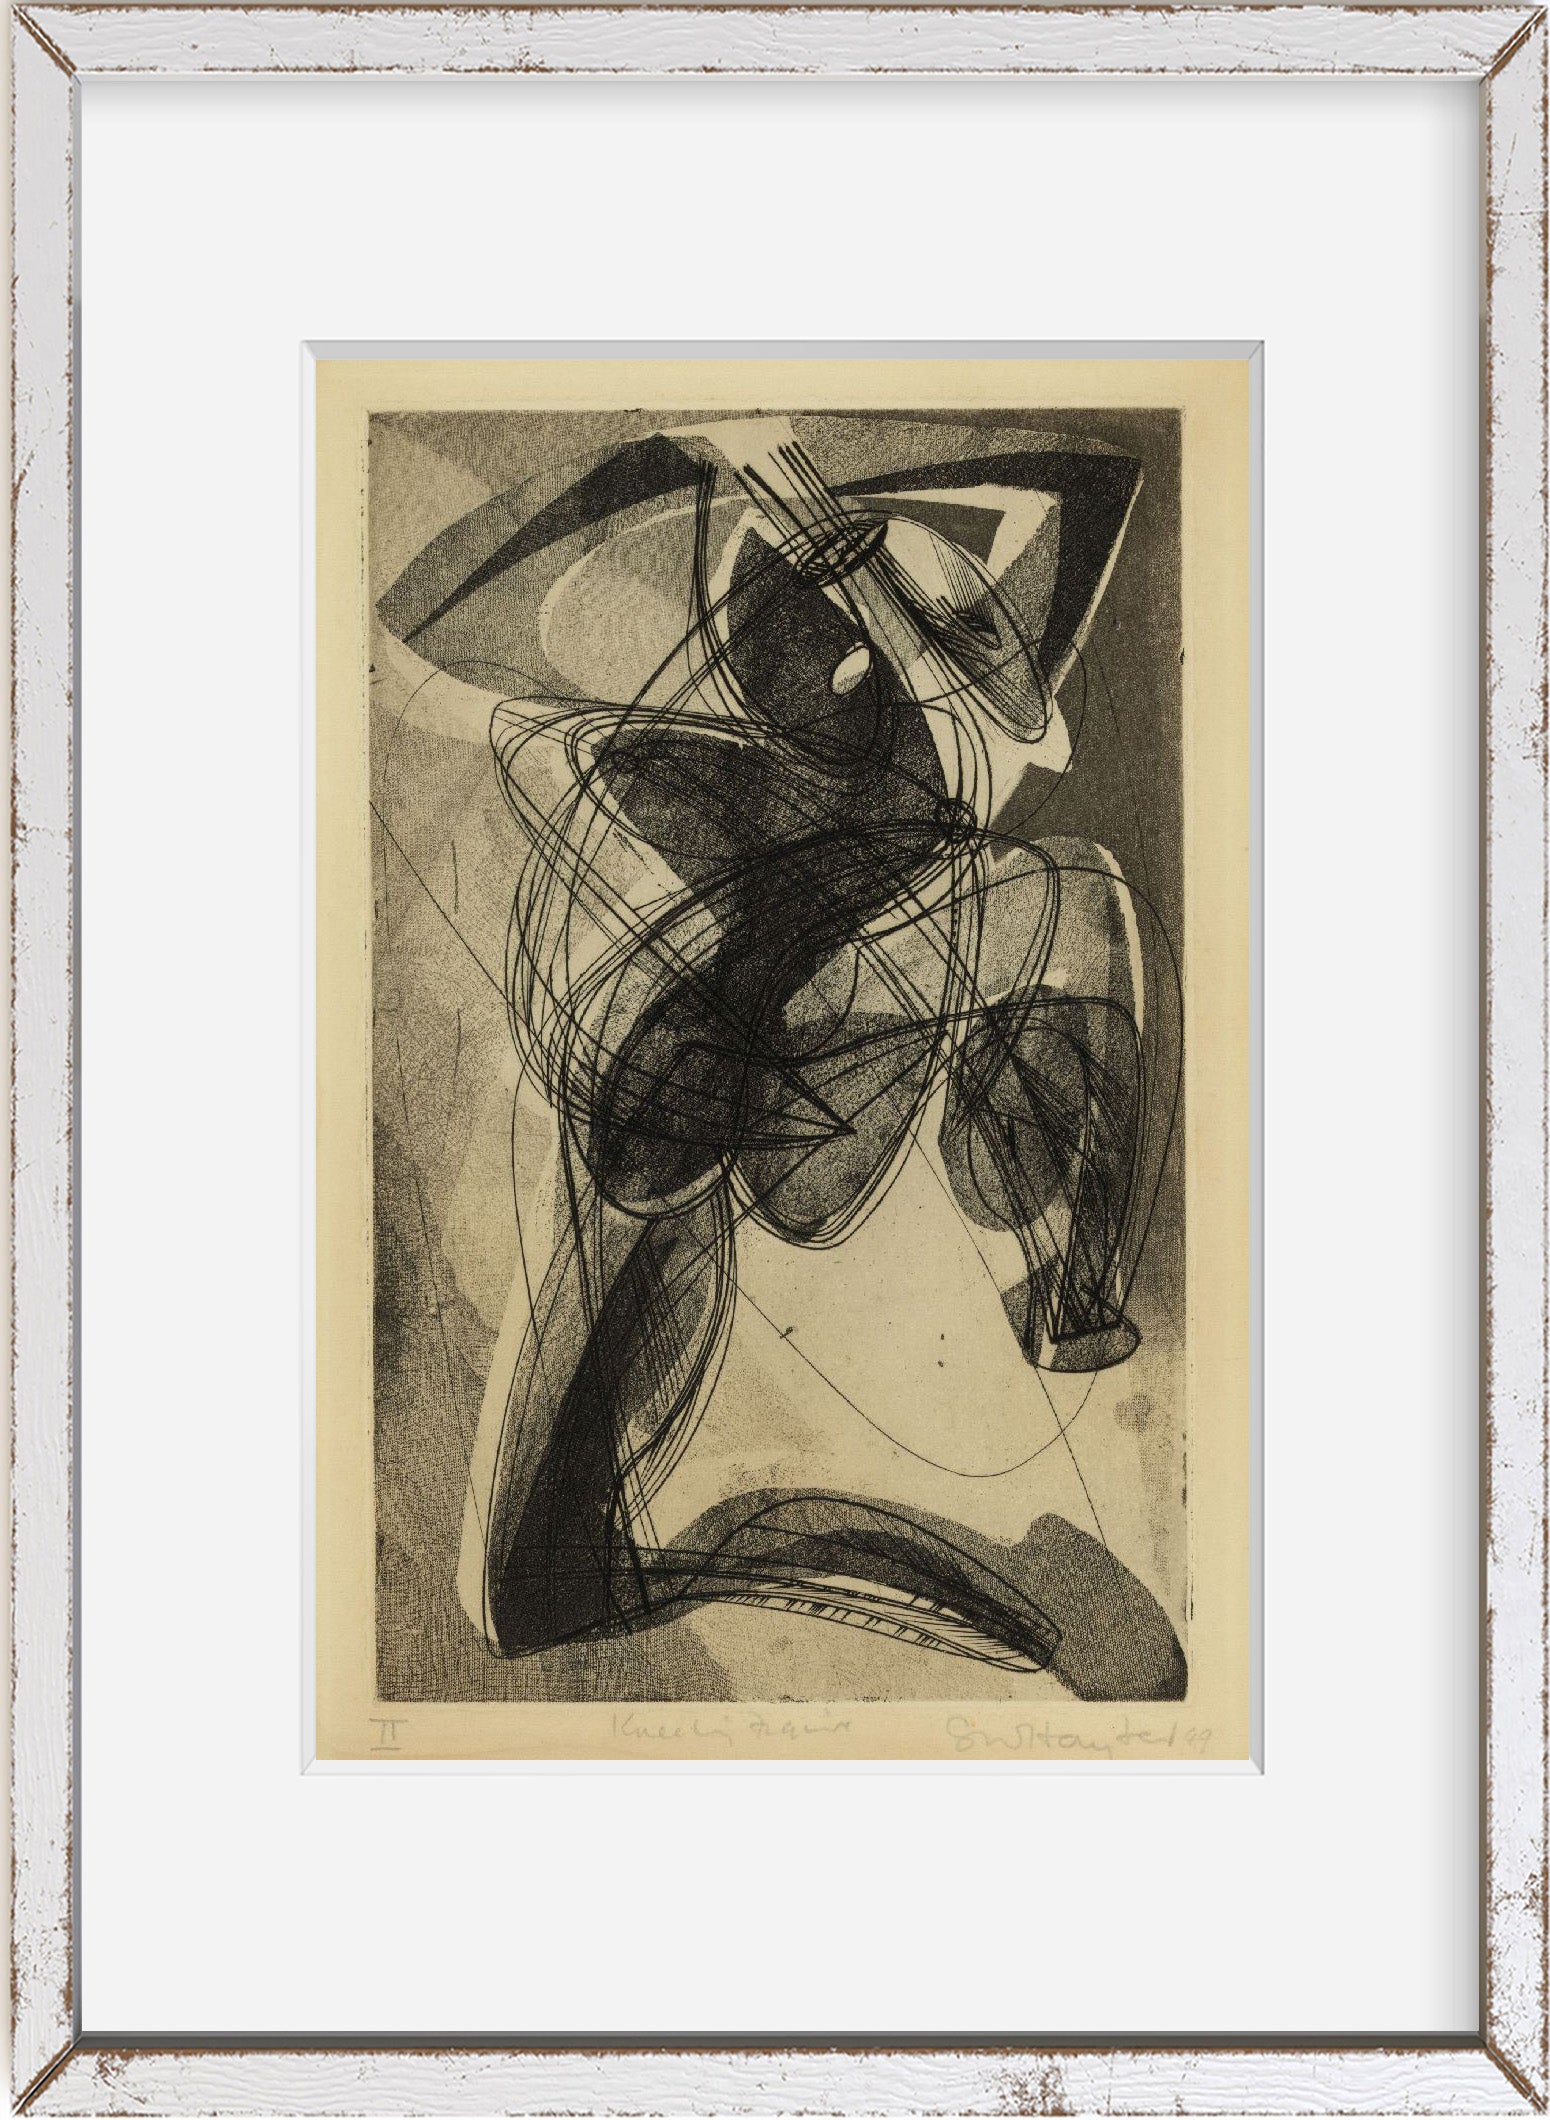 Photo: Kneeling figure, abstract prints, art, s, Stanley William Hayter, 1949,